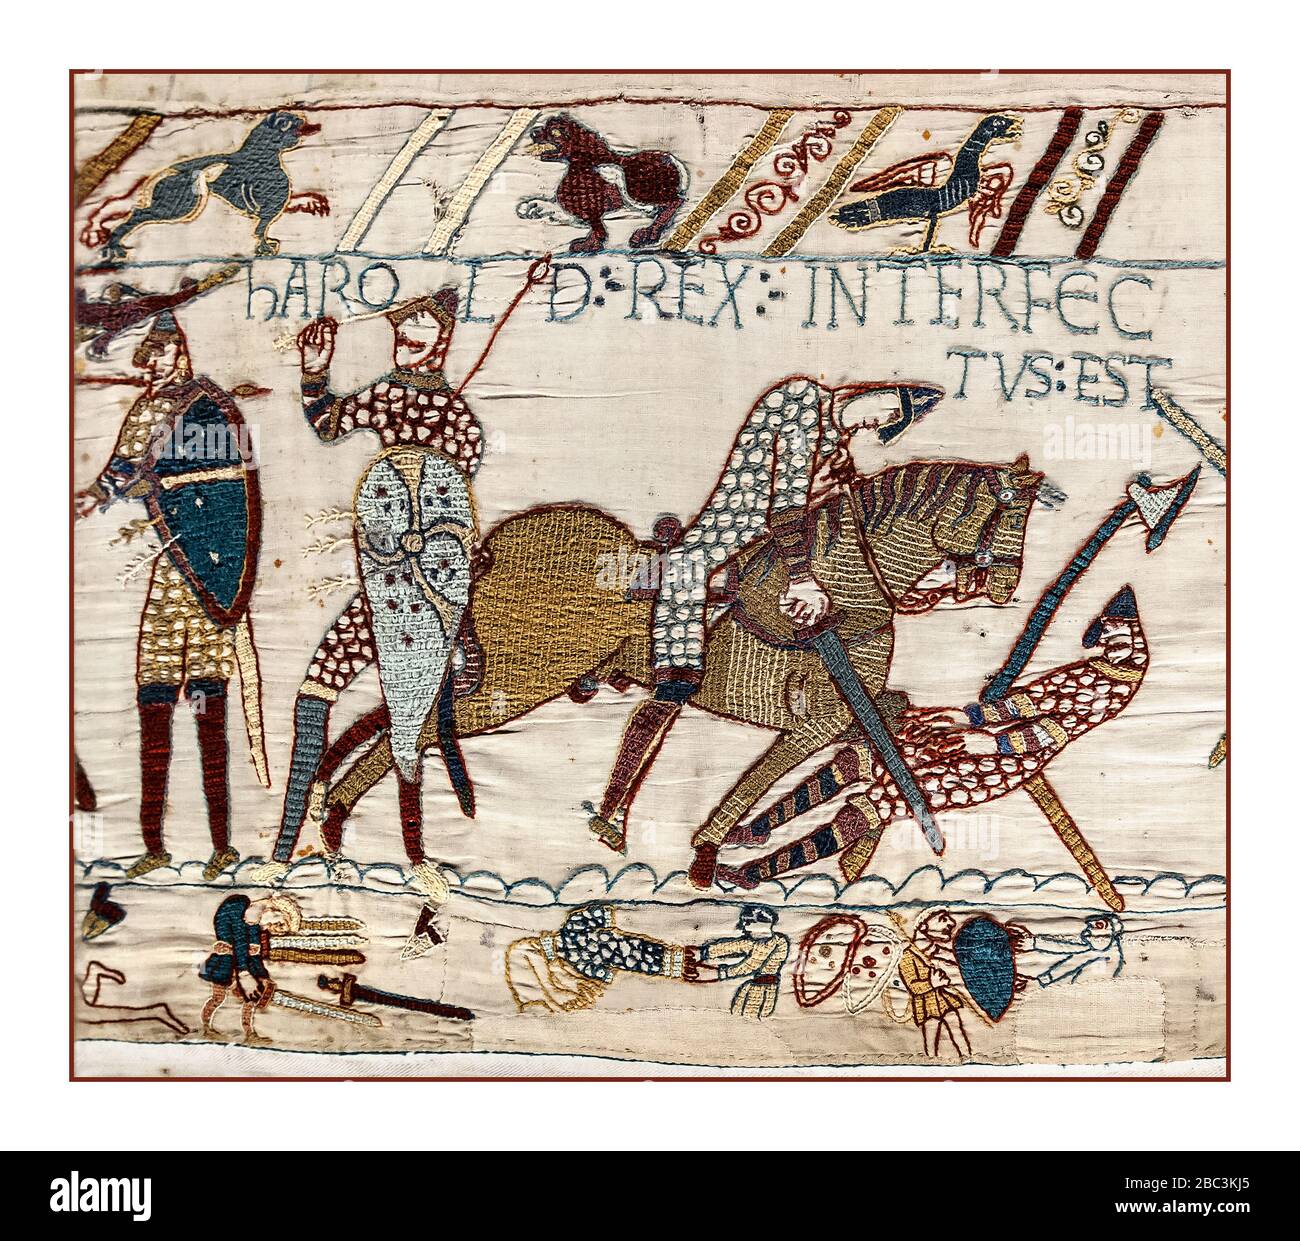 BAYEUX TAPISSERIE TOD Harold Rex Interfectus Est: 'König Harold wurde getötet'. Szene aus dem Wandteppich von Bayeux, die die Schlacht von Hastings und den Tod von König Harold darstellt, Bild von der Wandteppich von Bayeux, Szene 87. 14. Oktober 1066 Schlacht bei Hastings, East Sussex, England entscheidender normannischer Sieg die Schlacht von Hastings wurde am 14. Oktober 1066 zwischen der normannisch-französischen Armee von Wilhelm, dem Herzog der Normandie, und einer englischen Armee unter dem angelsächsischen König Harold Godwinson ausgetragen, der die normannische Eroberung Englands begann. Es fand etwa 7 Meilen (11 Kilometer) nordwestlich von Hastings statt. Stockfoto